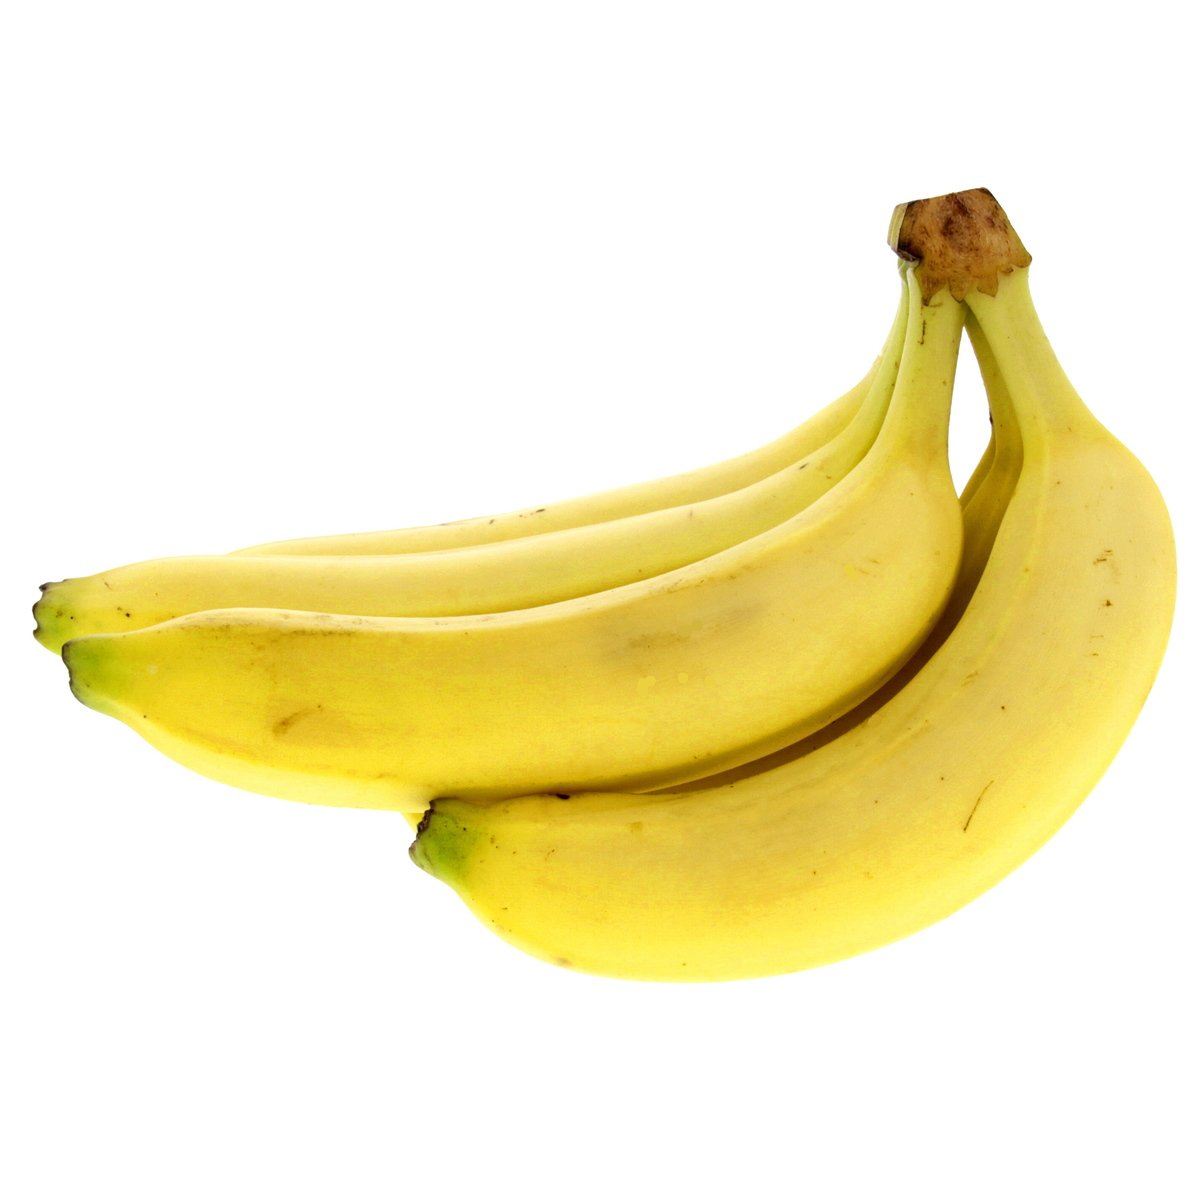 Dole Banana Philippines 1 pkt